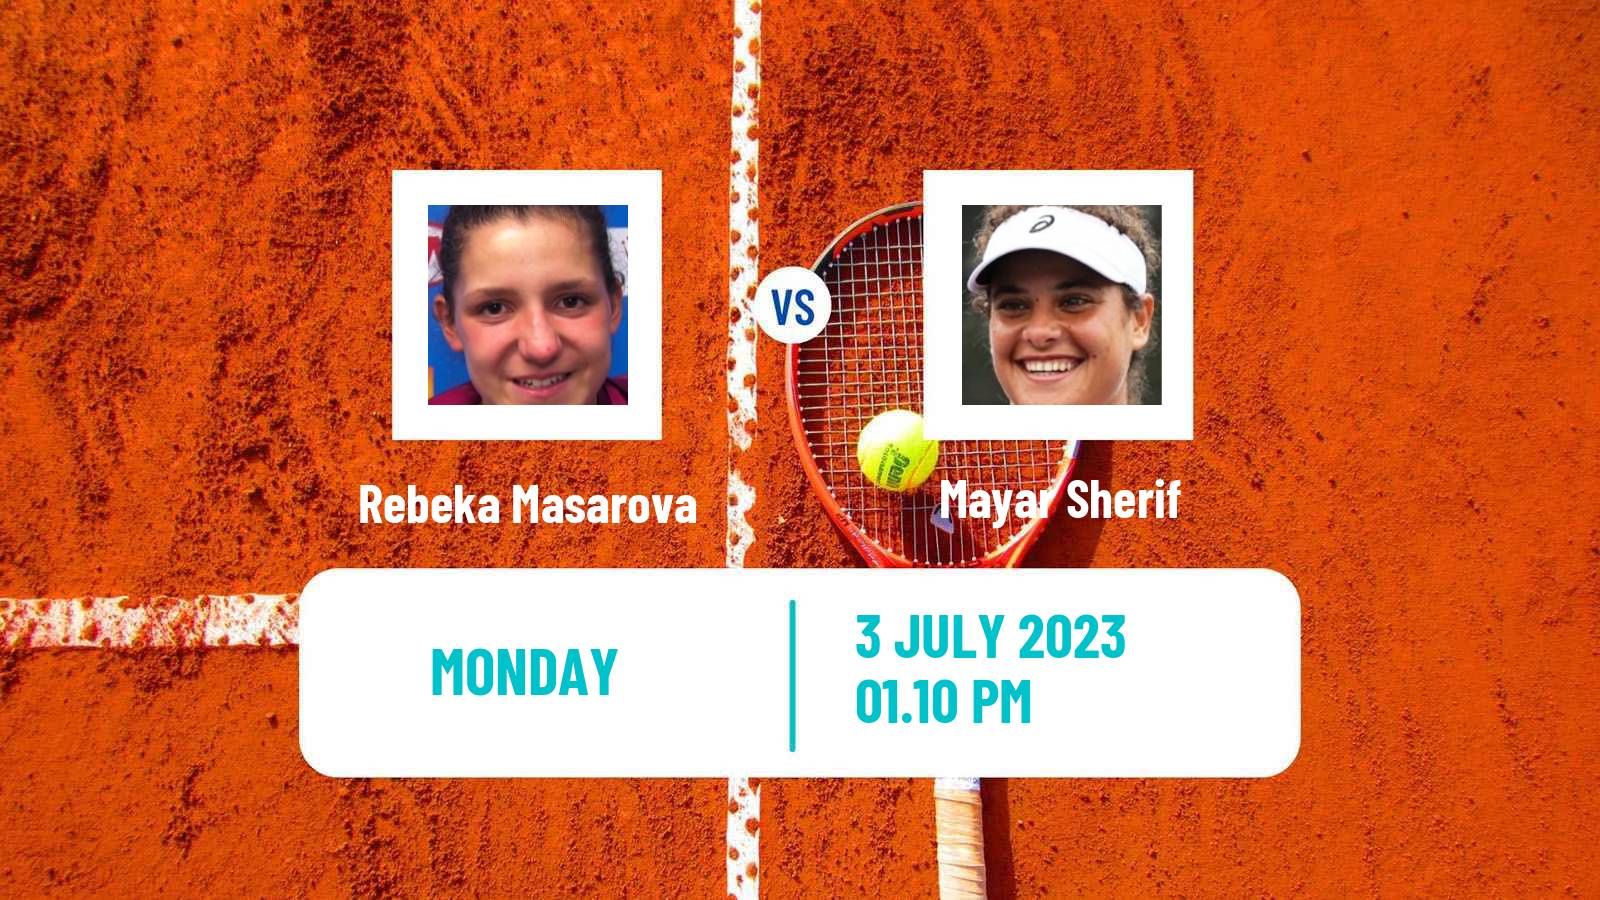 Tennis WTA Wimbledon Rebeka Masarova - Mayar Sherif